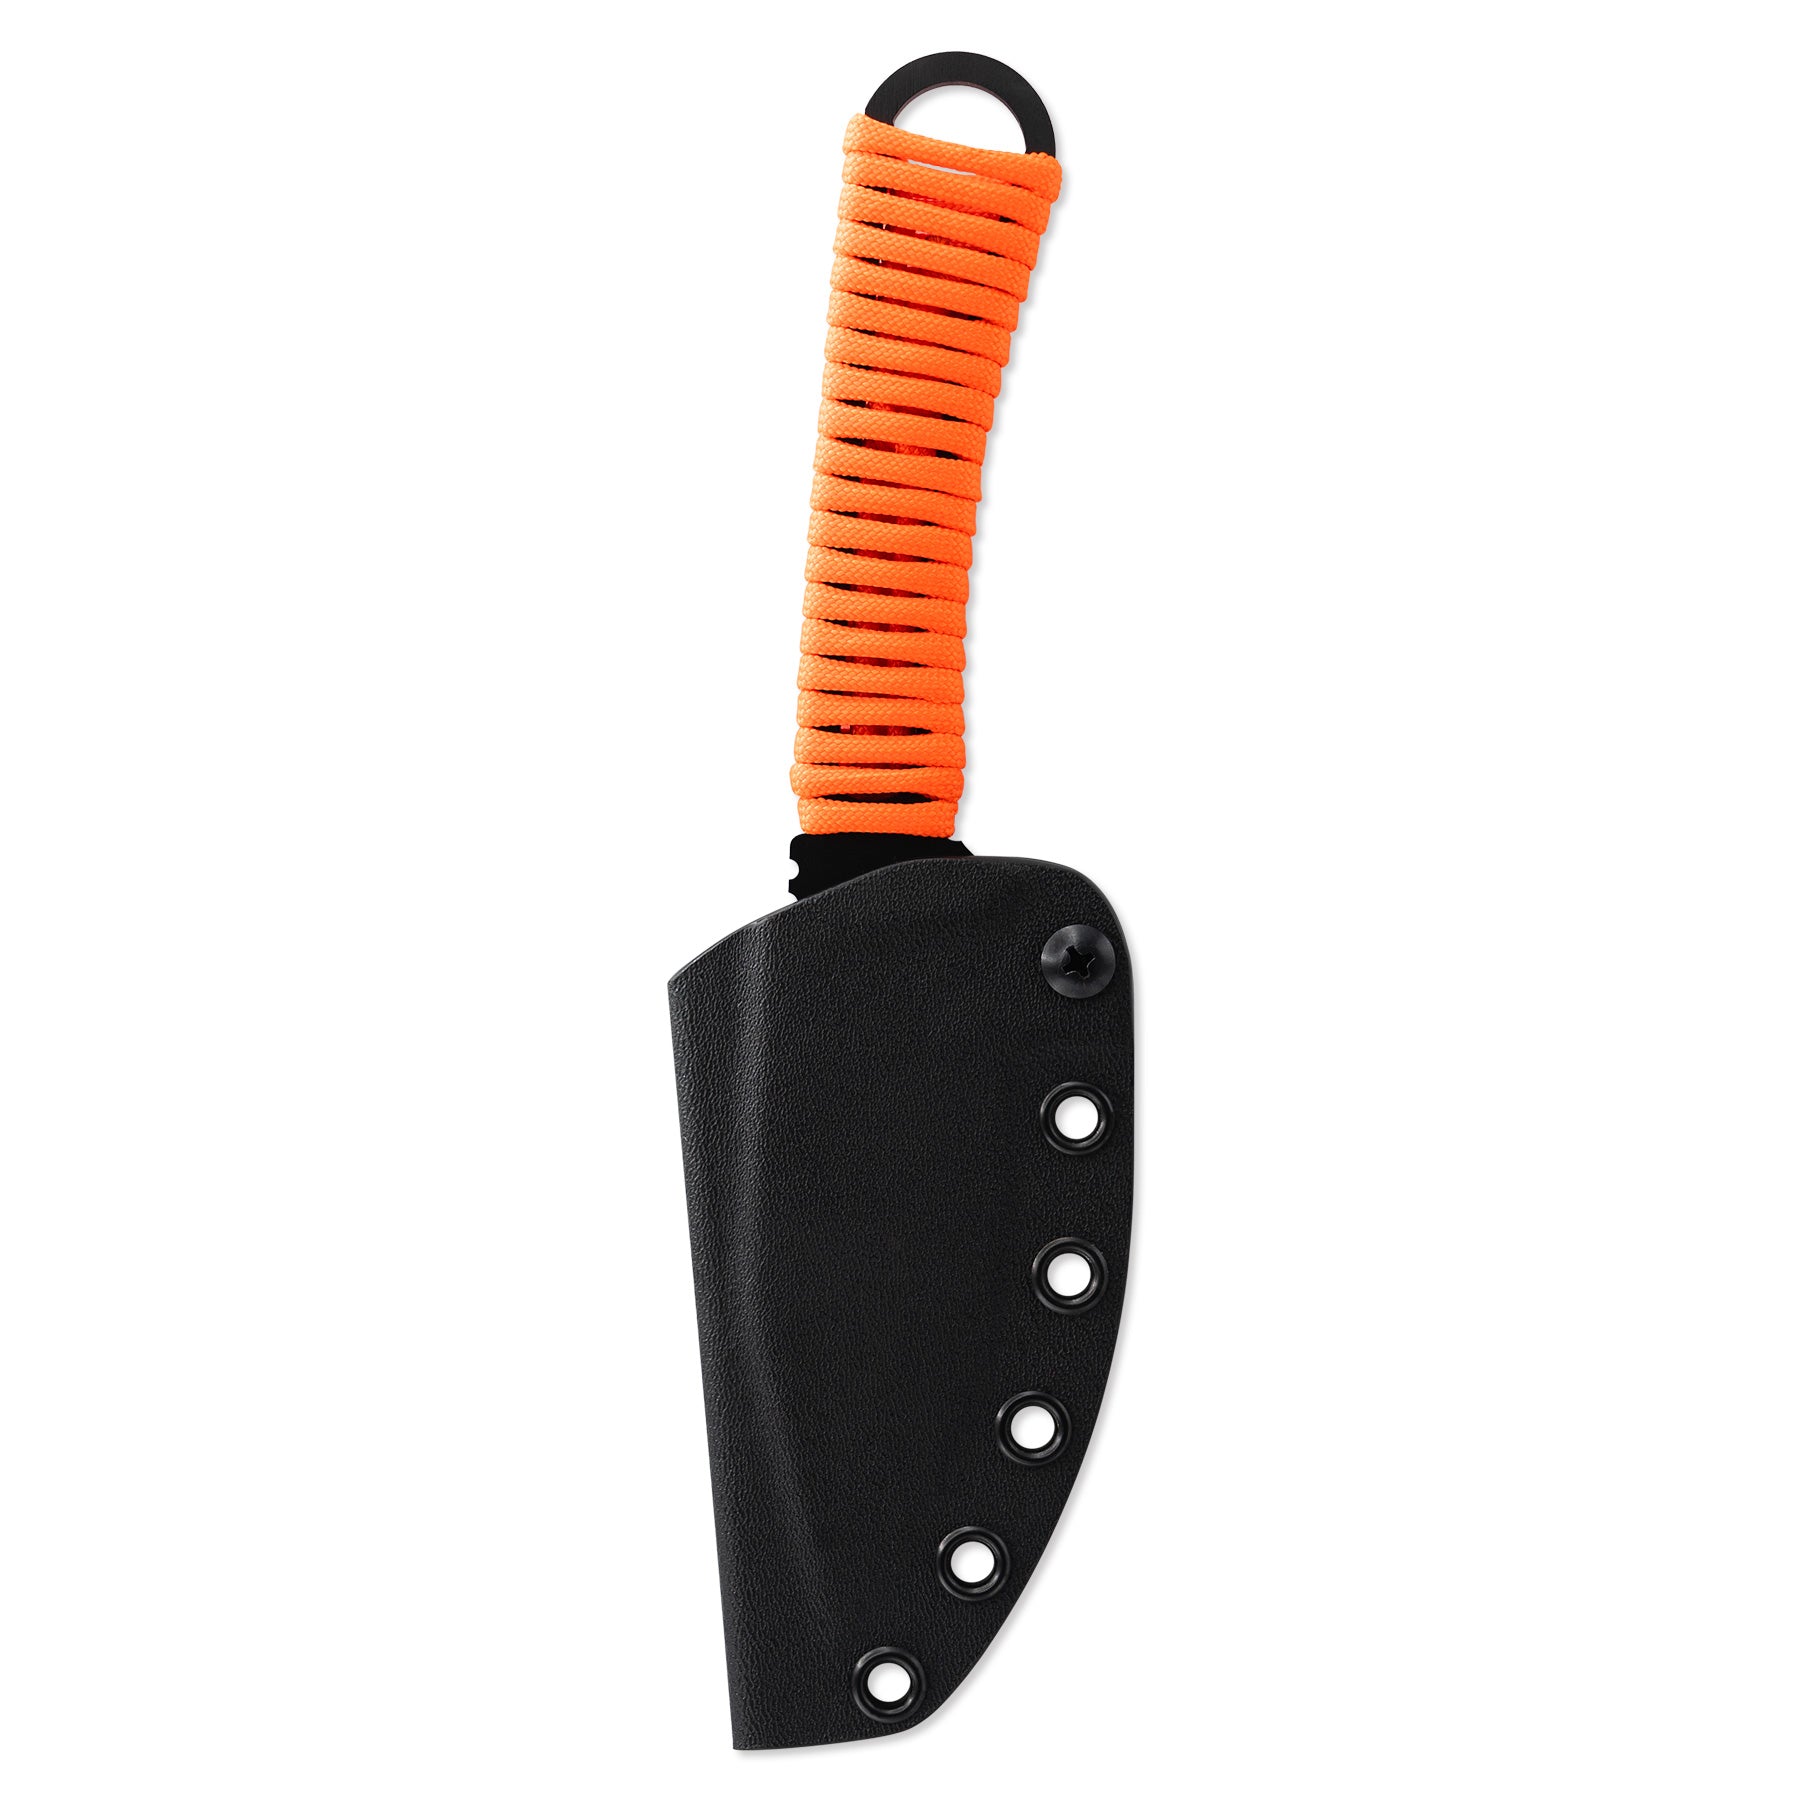 Merlin Gut Hook Knife with Sheath - Blaze Orange - FORLOH